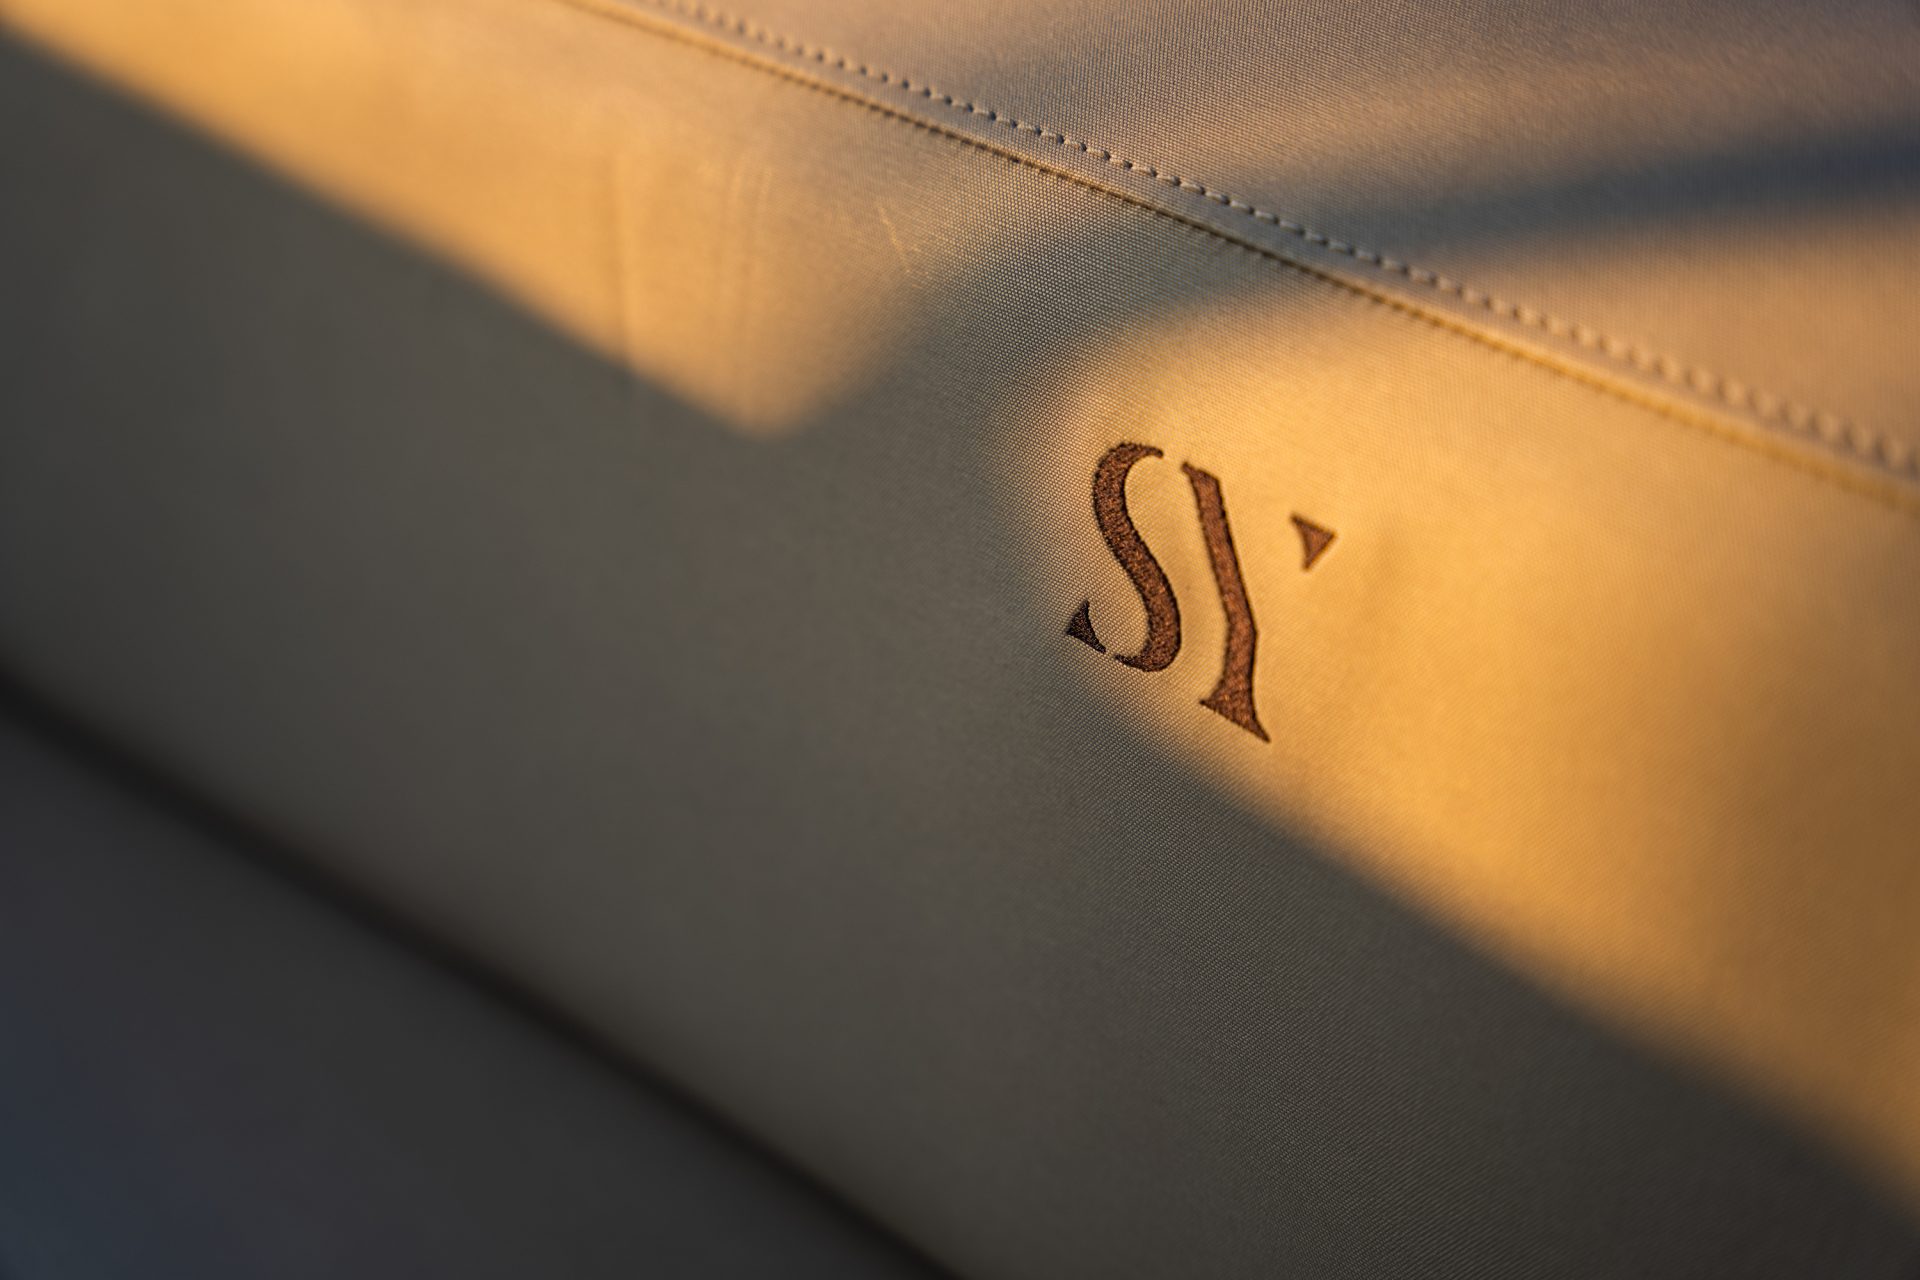 setag yacht logo on seat sunset